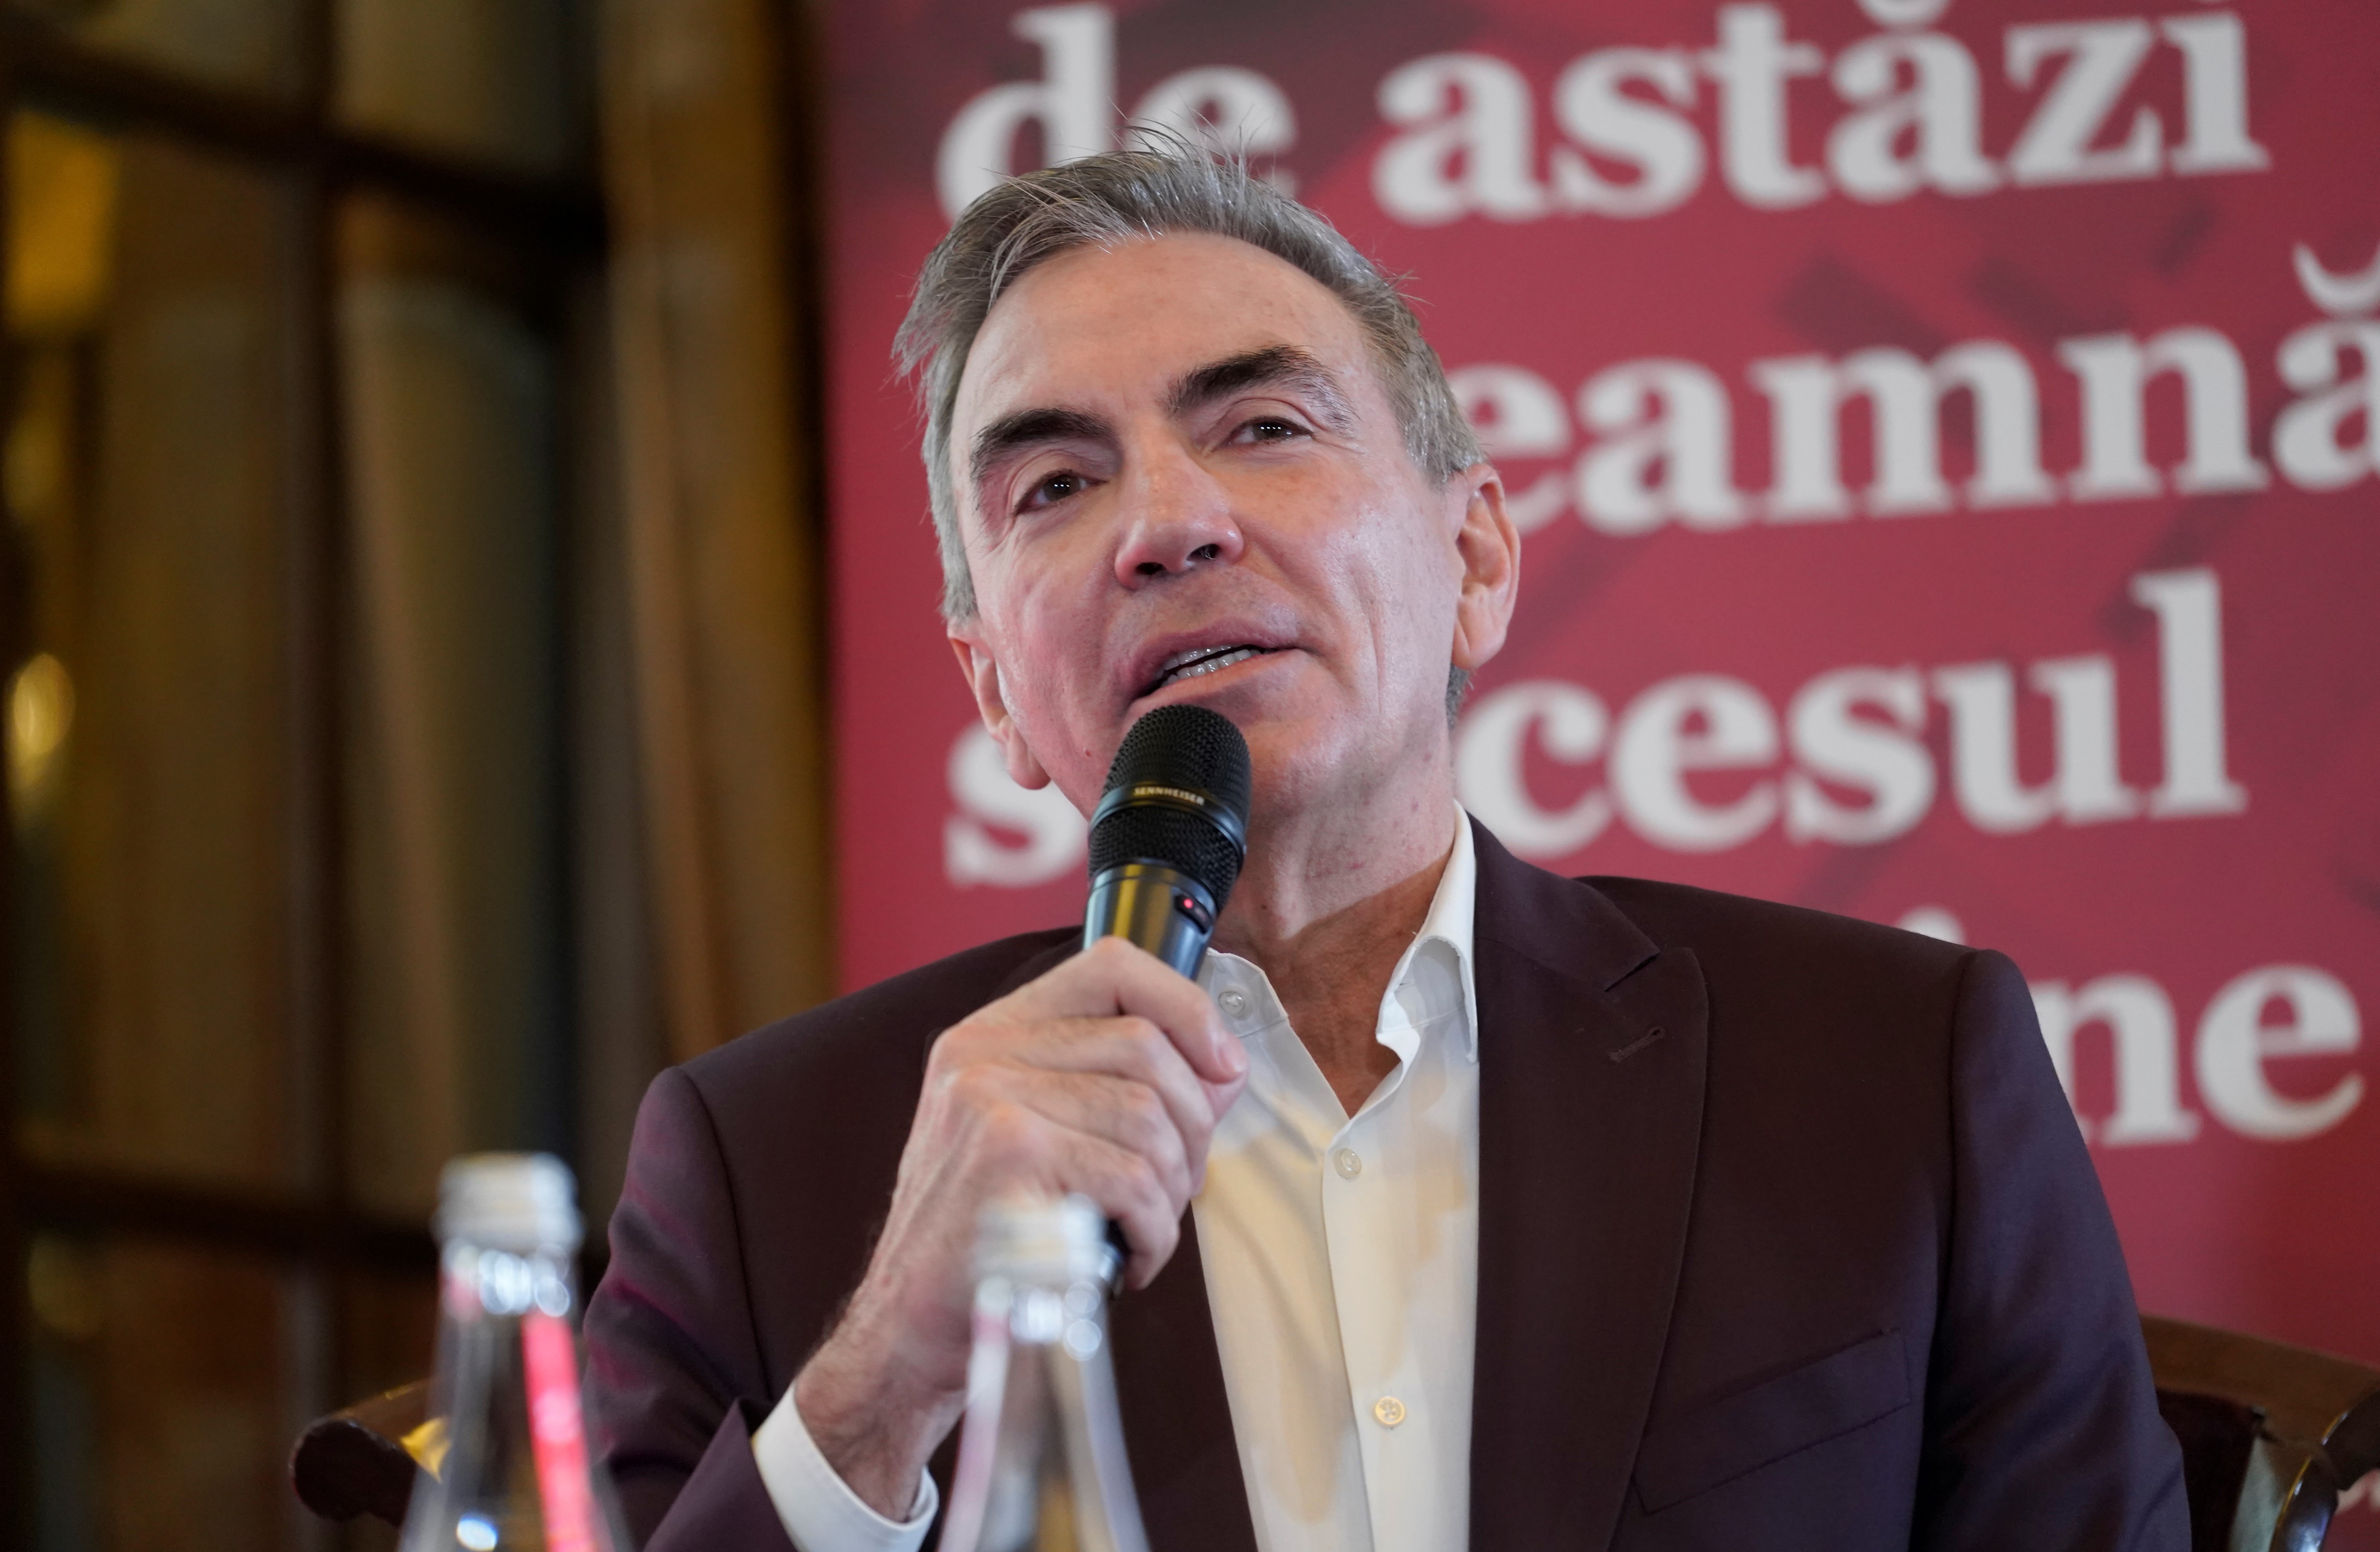 Dragoş Anastasiu, CEO Eurolines România: Ideea de restructurare pentru mine înseamnă o permanentă inovare